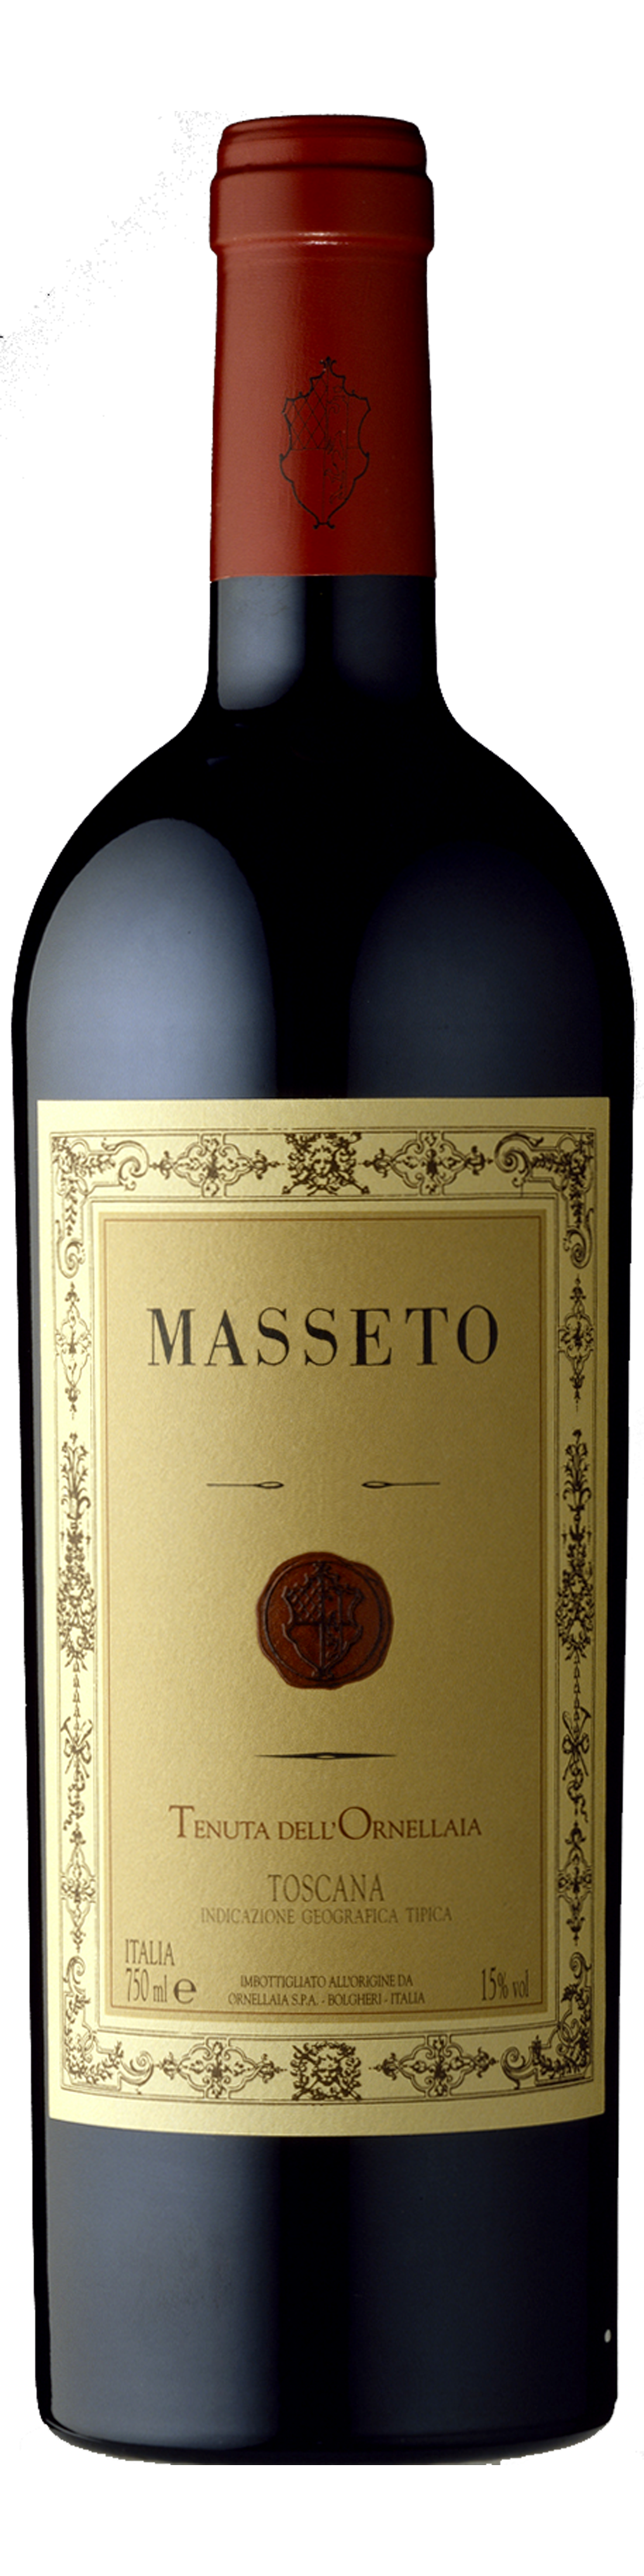 Image of product Masseto